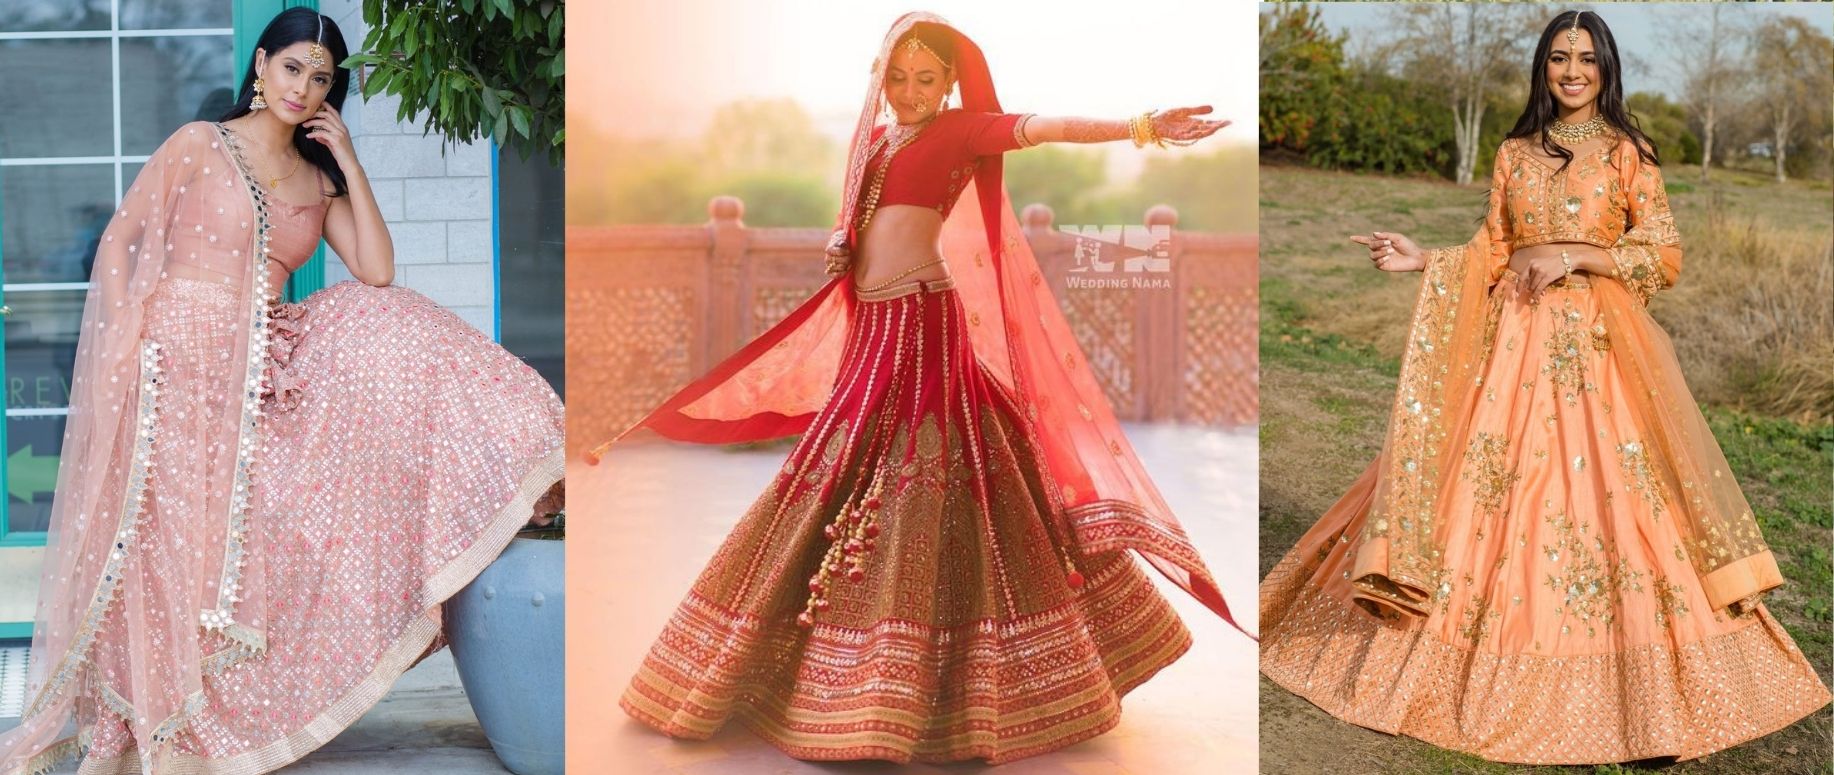 Free Stitching Bollywood Lehenga, Indian Lehenga Choli, Wedding Lehenga,  Lehenga Choli, Floral Printed Yellow Georgette Lehenga Choli - Etsy |  Floral lehenga, Choli designs, Lehenga designs